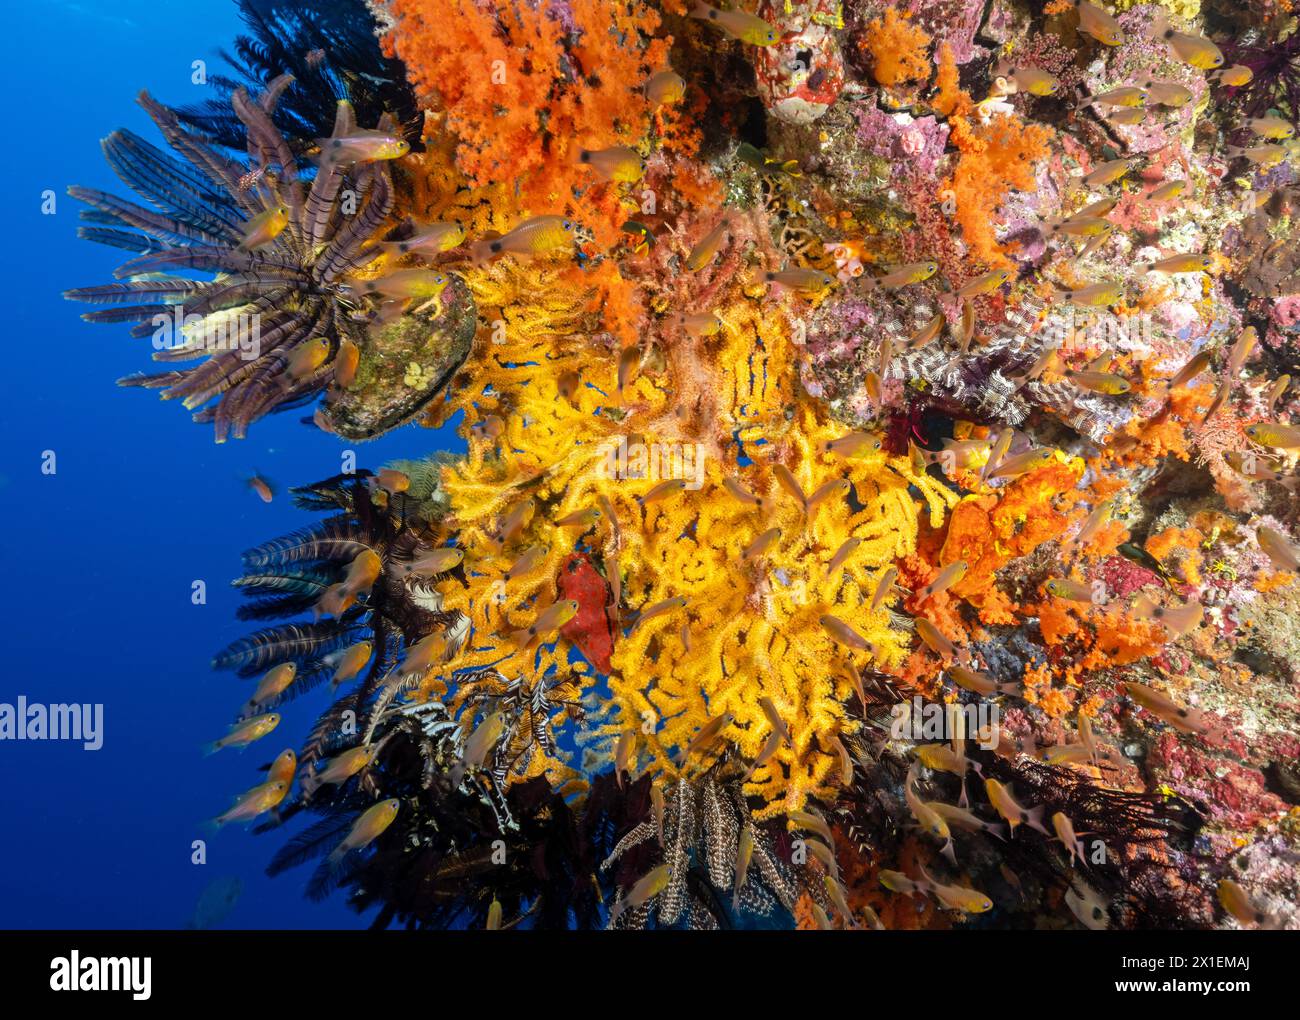 Buntes Riff mit weichen Korallen, Krinoiden und Ringtaien, Apogon aureus, Raja Ampat Indonesien. Stockfoto